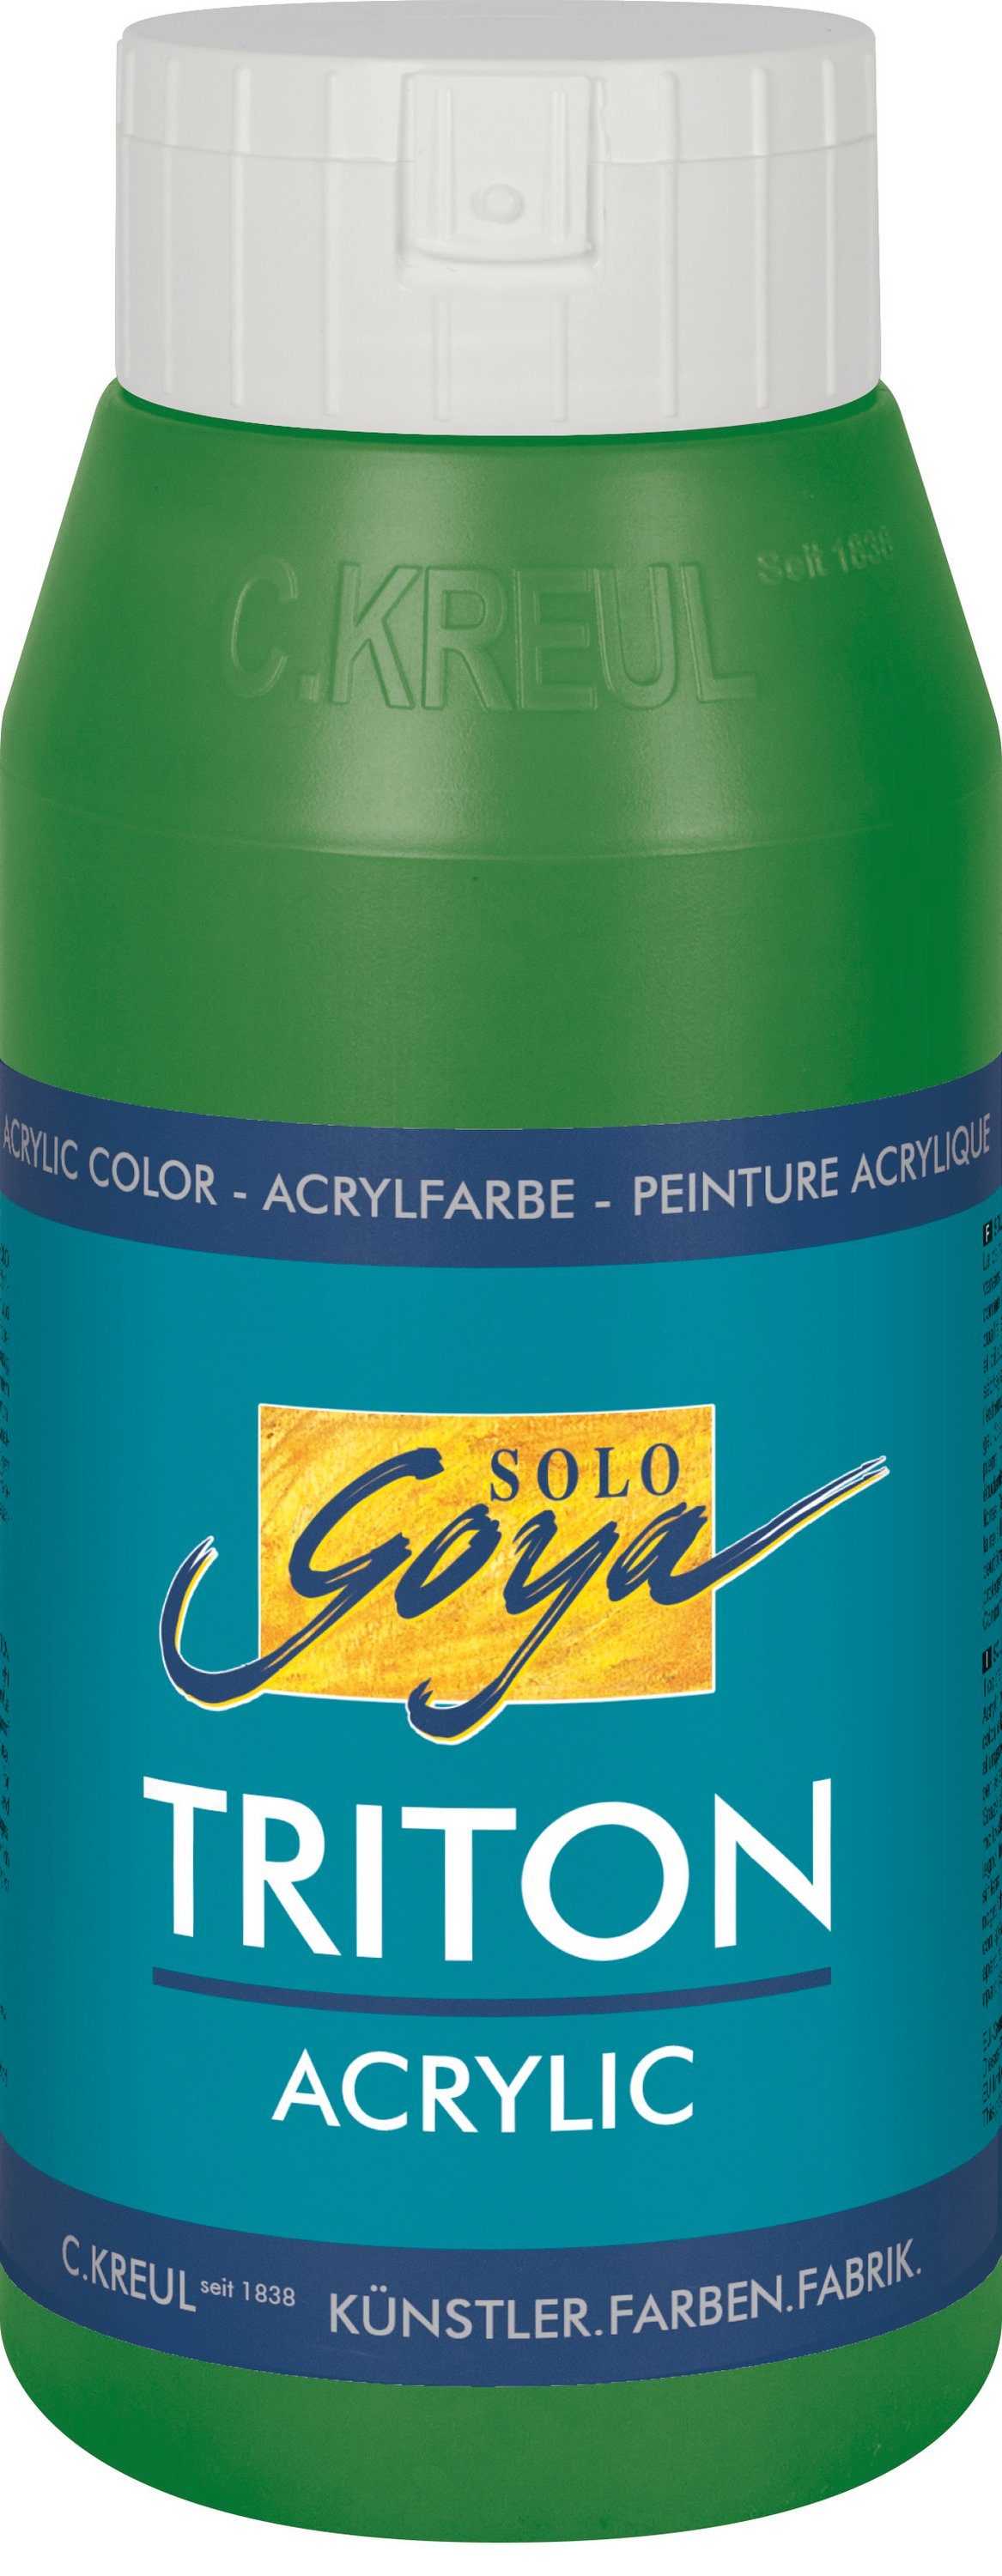 Kreul Acrylfarbe Solo Goya Triton ml 750 Acrylic, Laubgrün